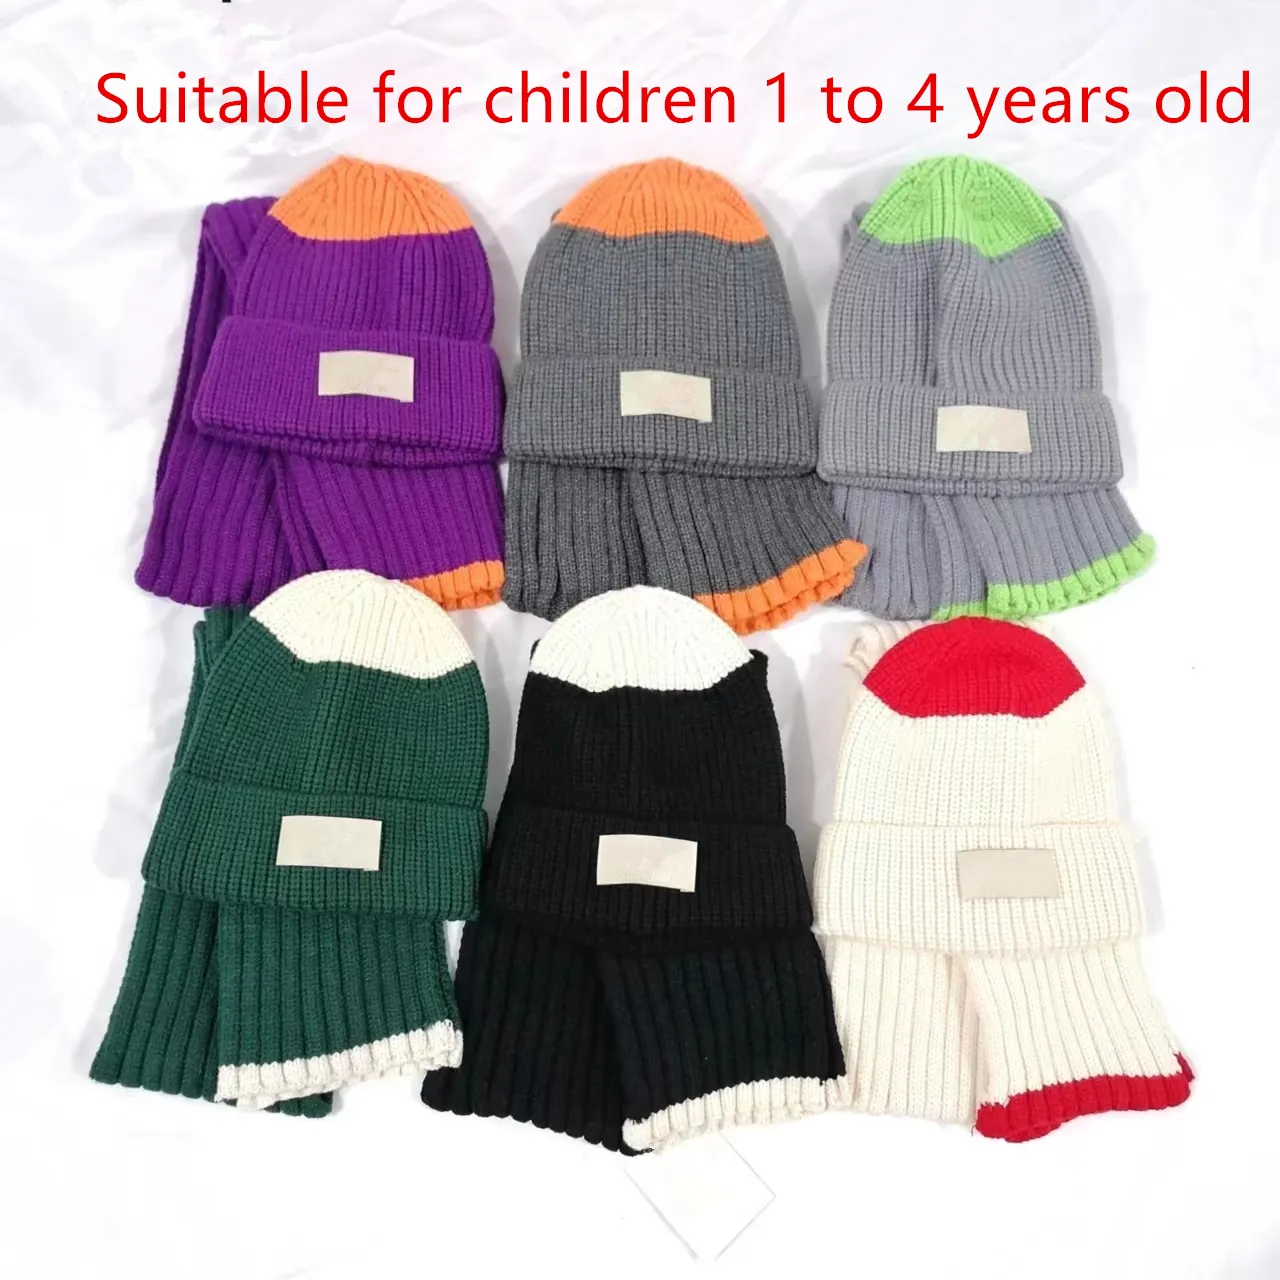 Ciepłe zimowe czapki szalika ustawione dla dzieci i szalika Projektanta mody, odpowiednia dla dzieci w wieku od 1 do 4 lat